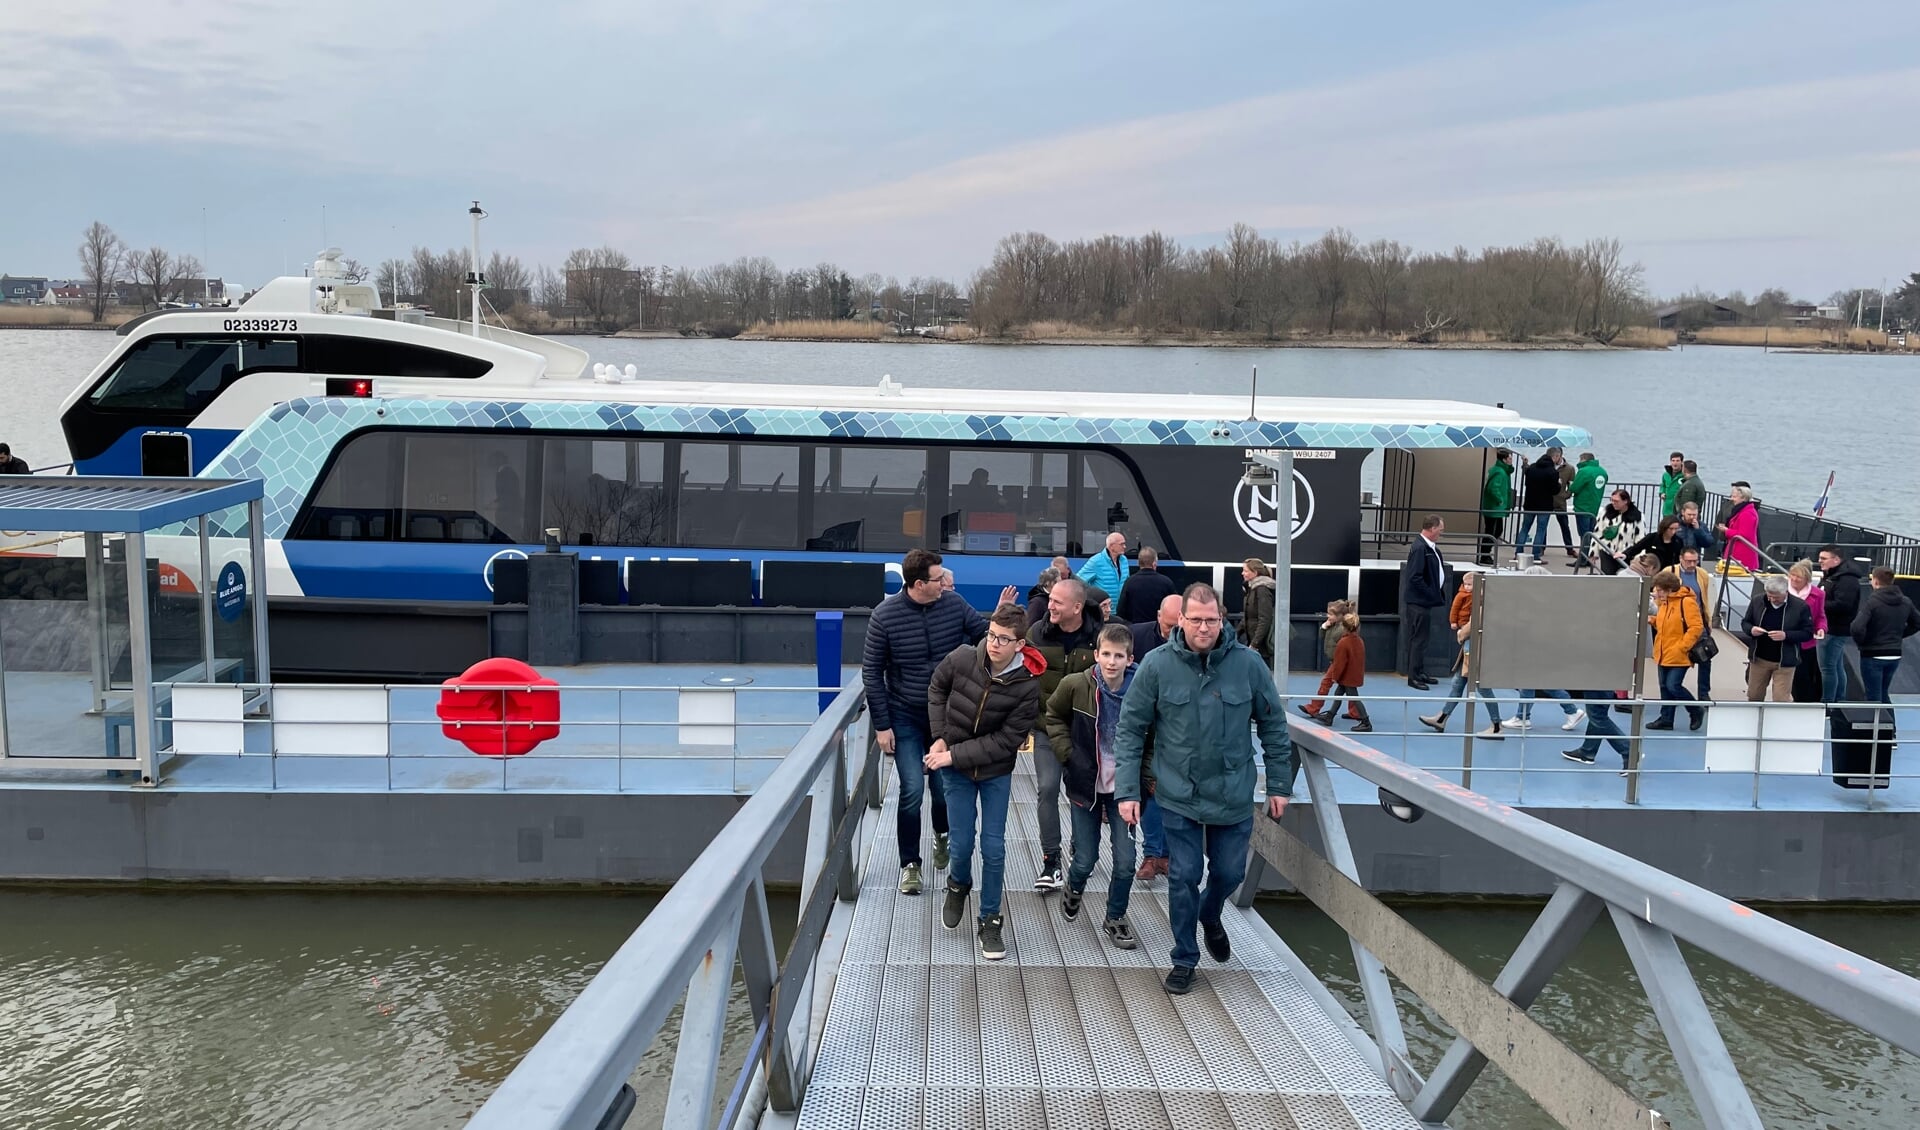 • De waterbus in de toekomst tot in Nieuwpoort?